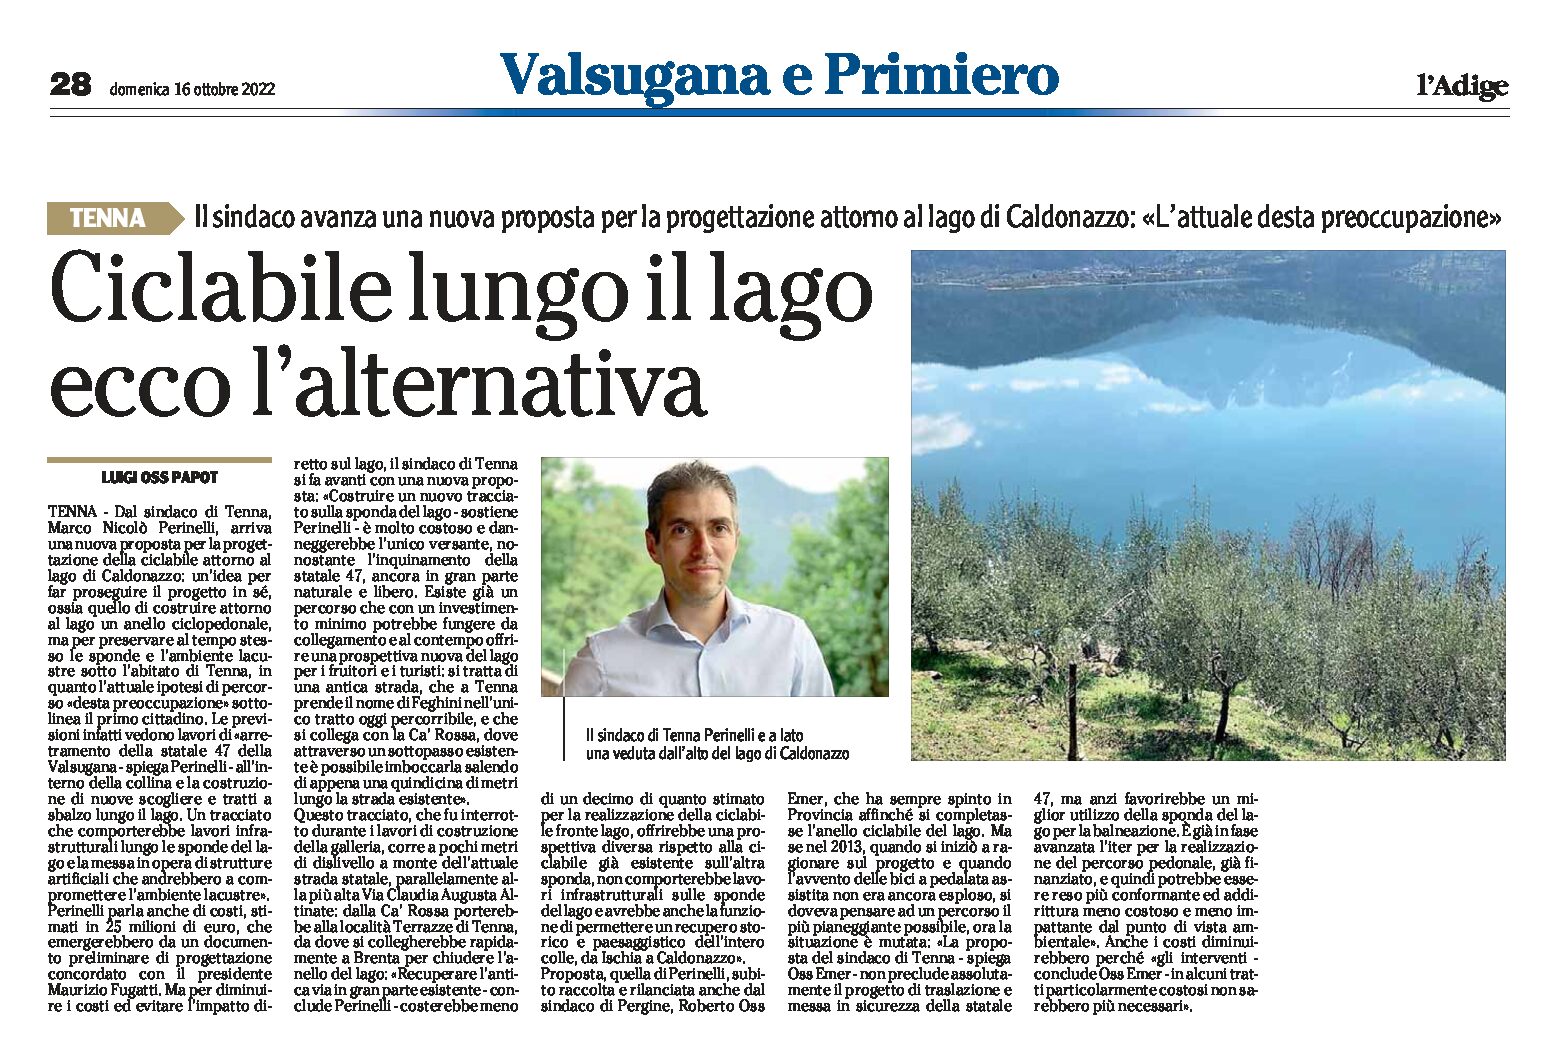 Tenna, il sindaco: nuova proposta per una ciclabile attorno al lago di Caldonazzo